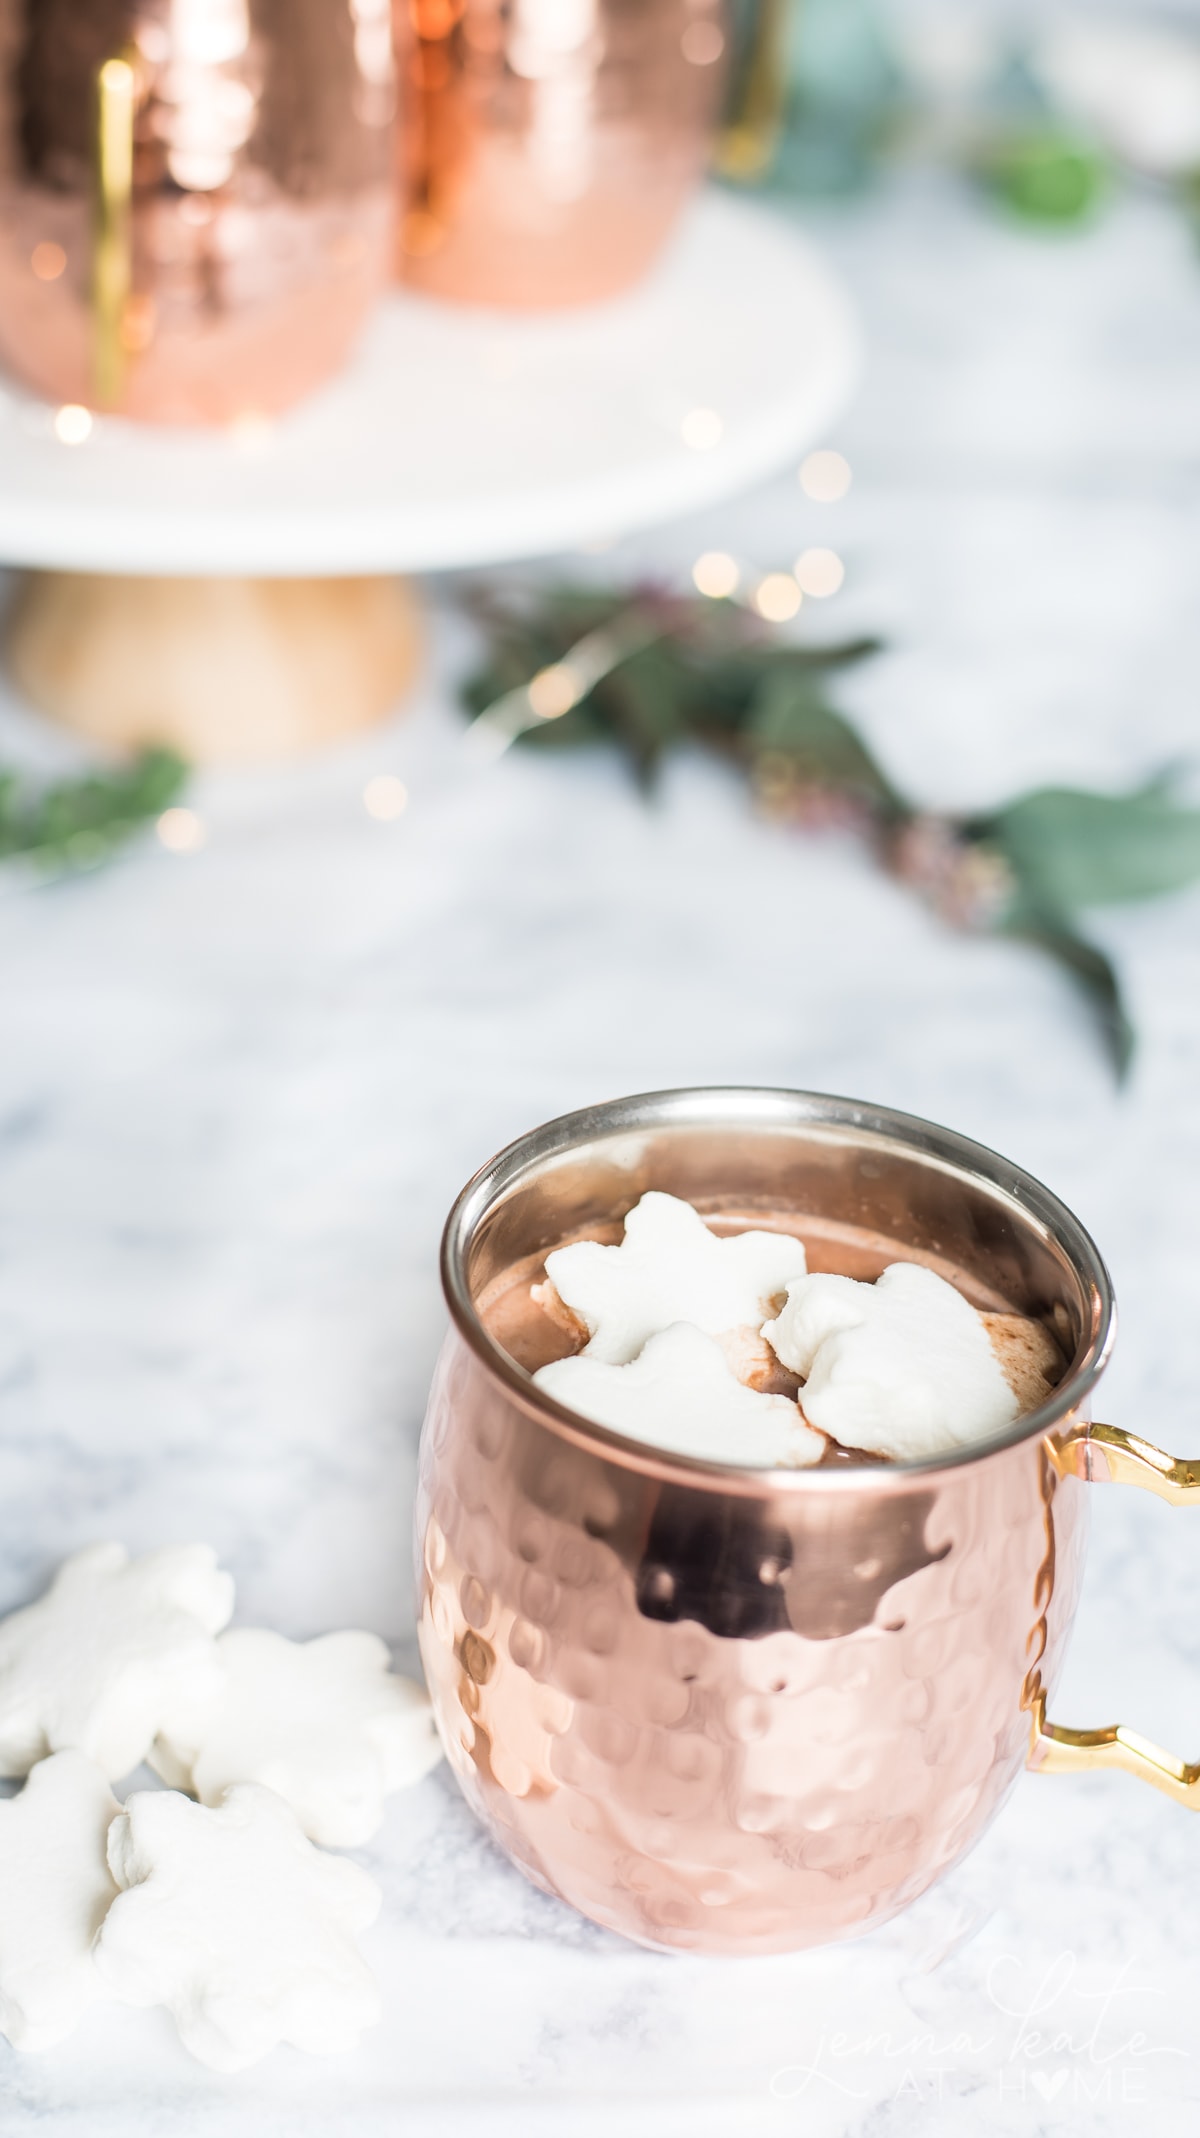 Best Ever Hot Chocolate Recipe